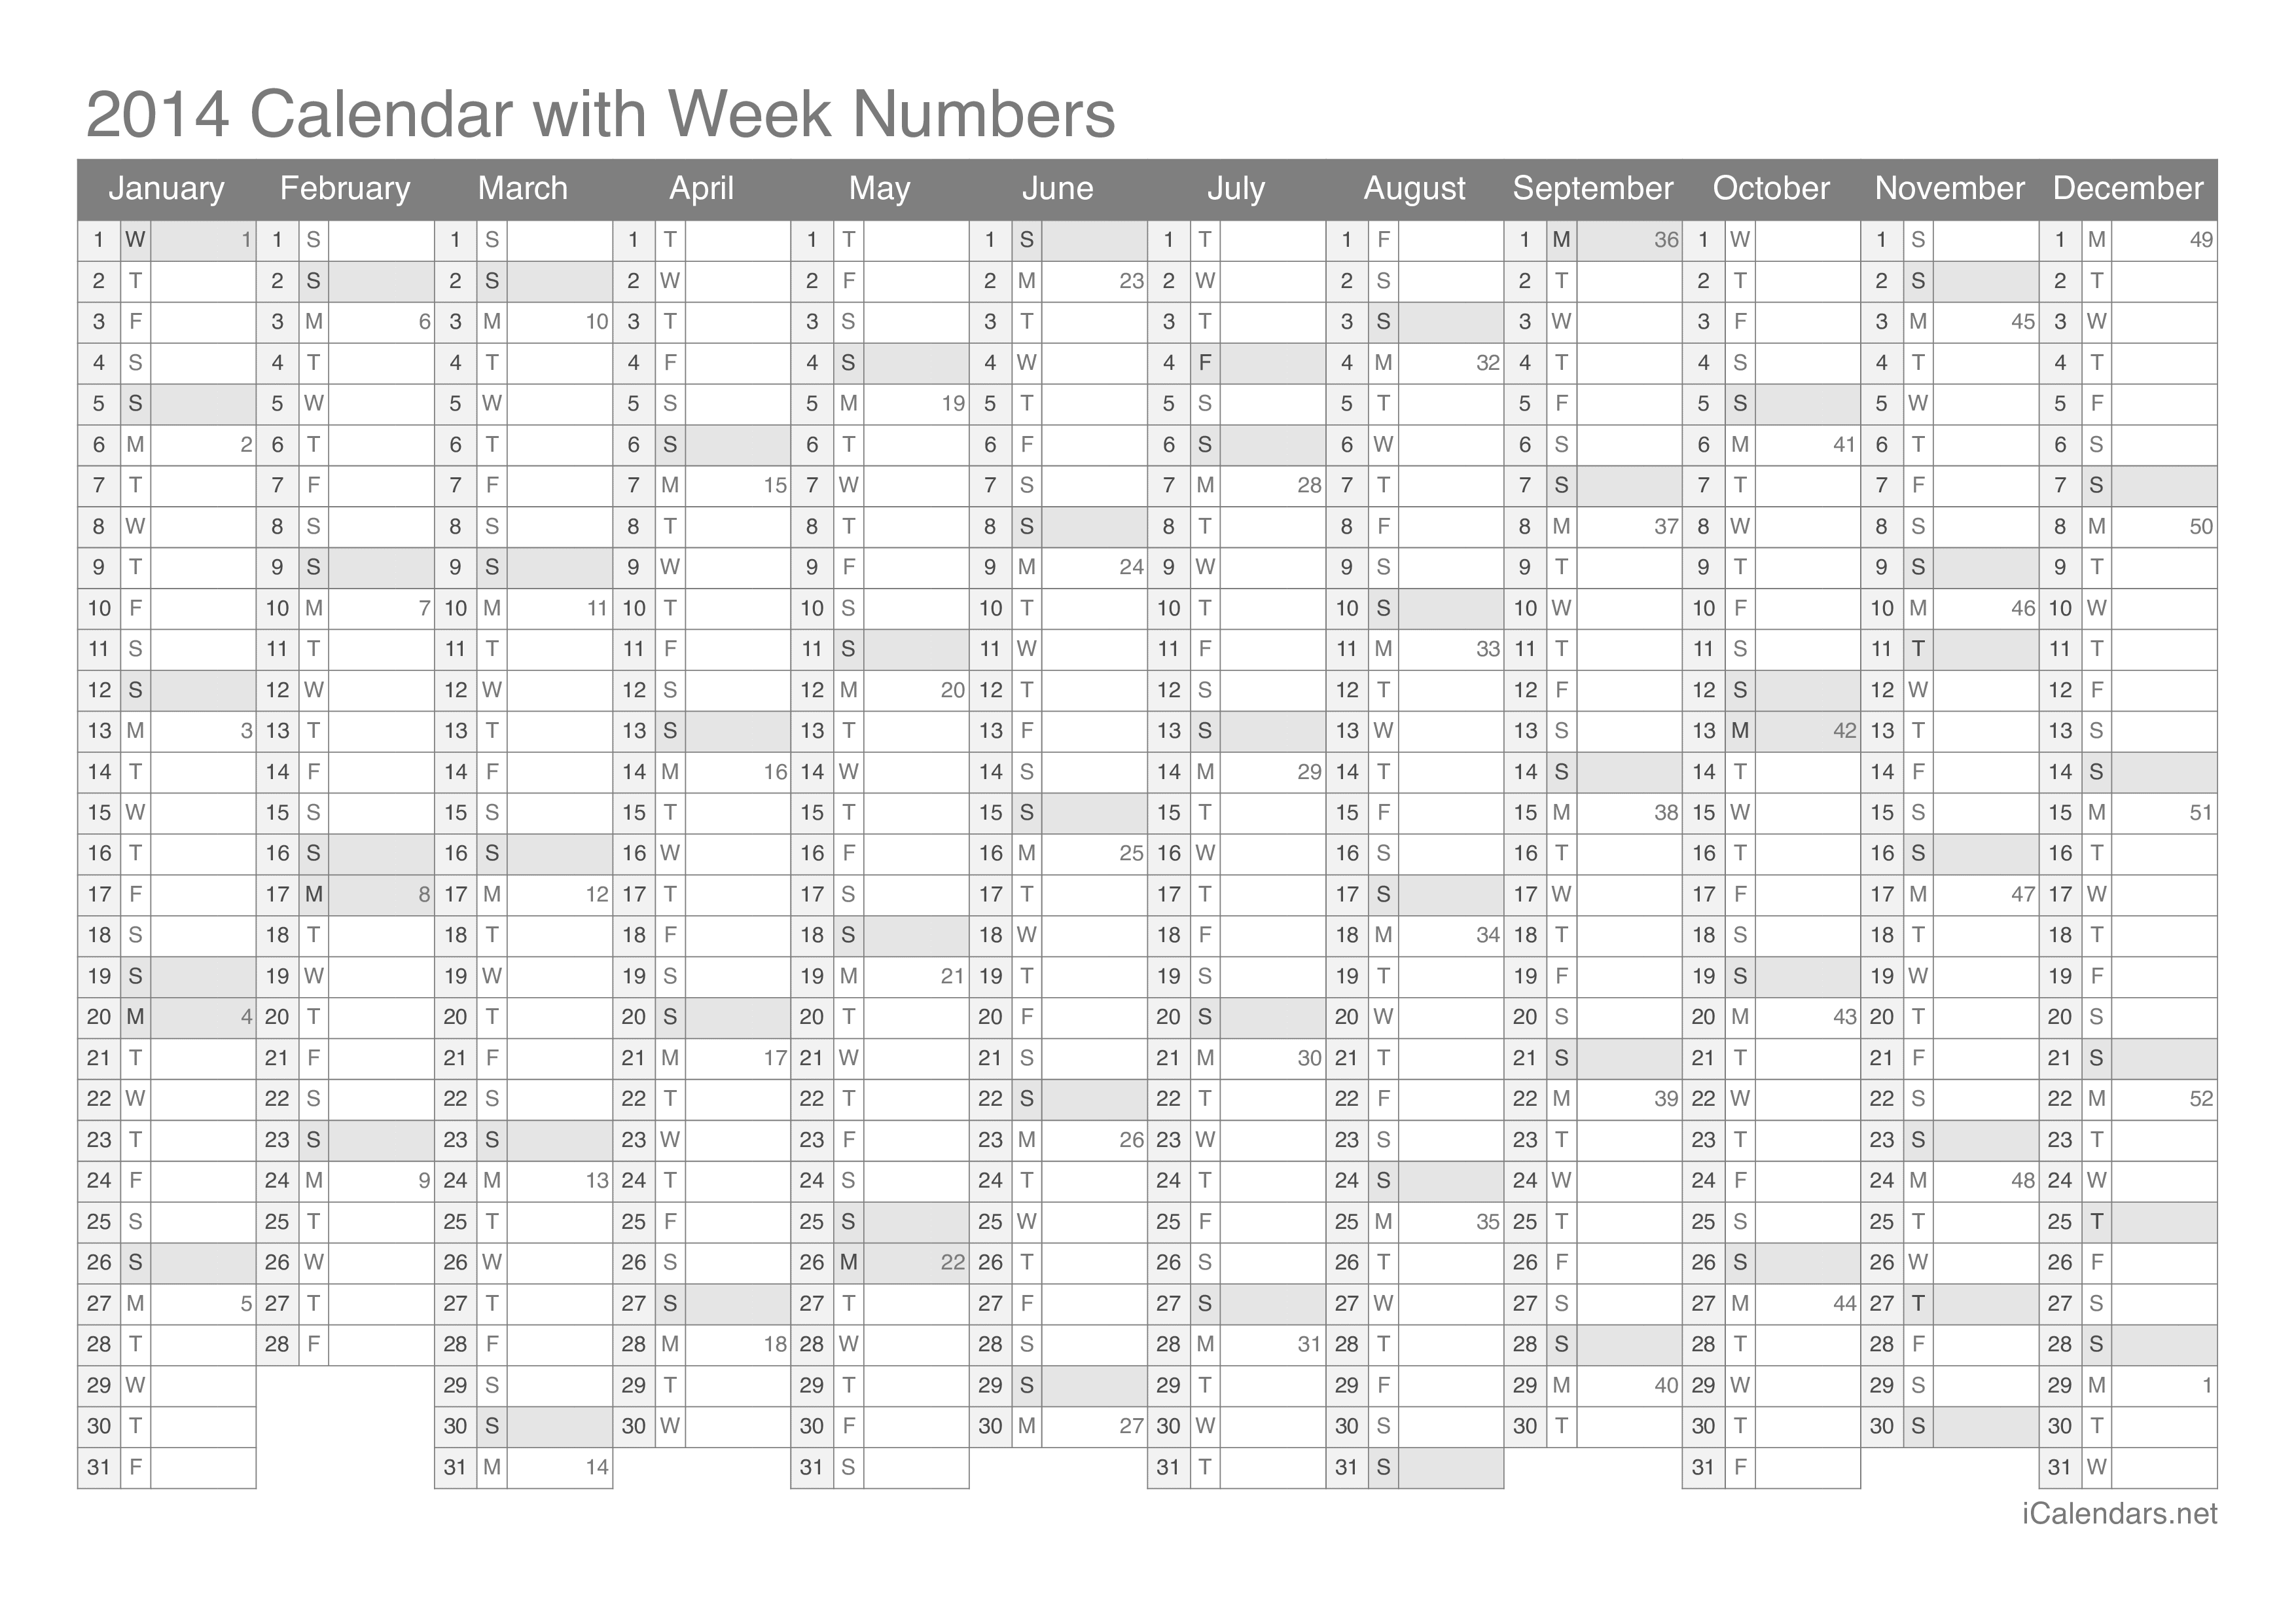 2014 Calendar with week numbers